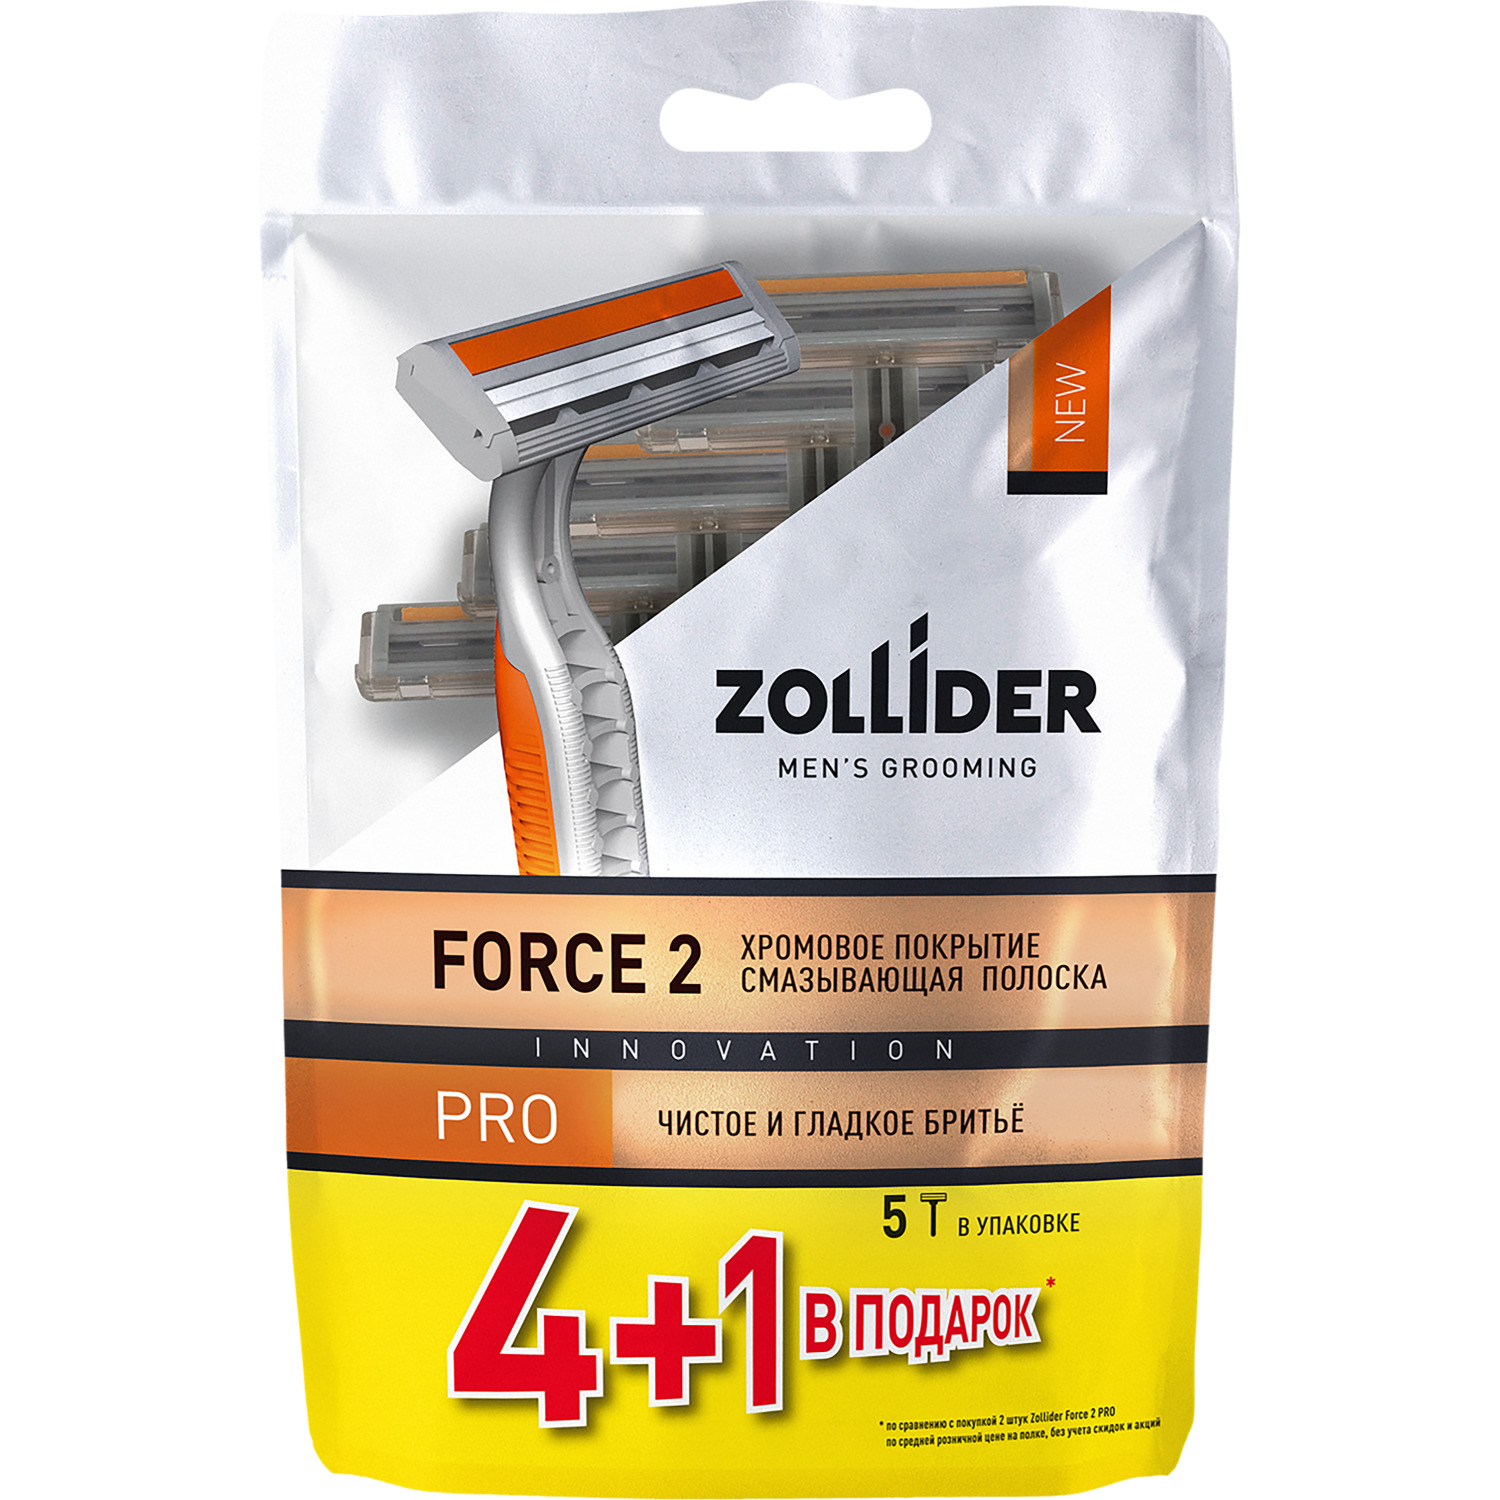 Одноразовые бритвенные станки Zollider Force 2 PRO 2 лезвия 4+1 шт станки одноразовые для бритья bic metal 6 шт